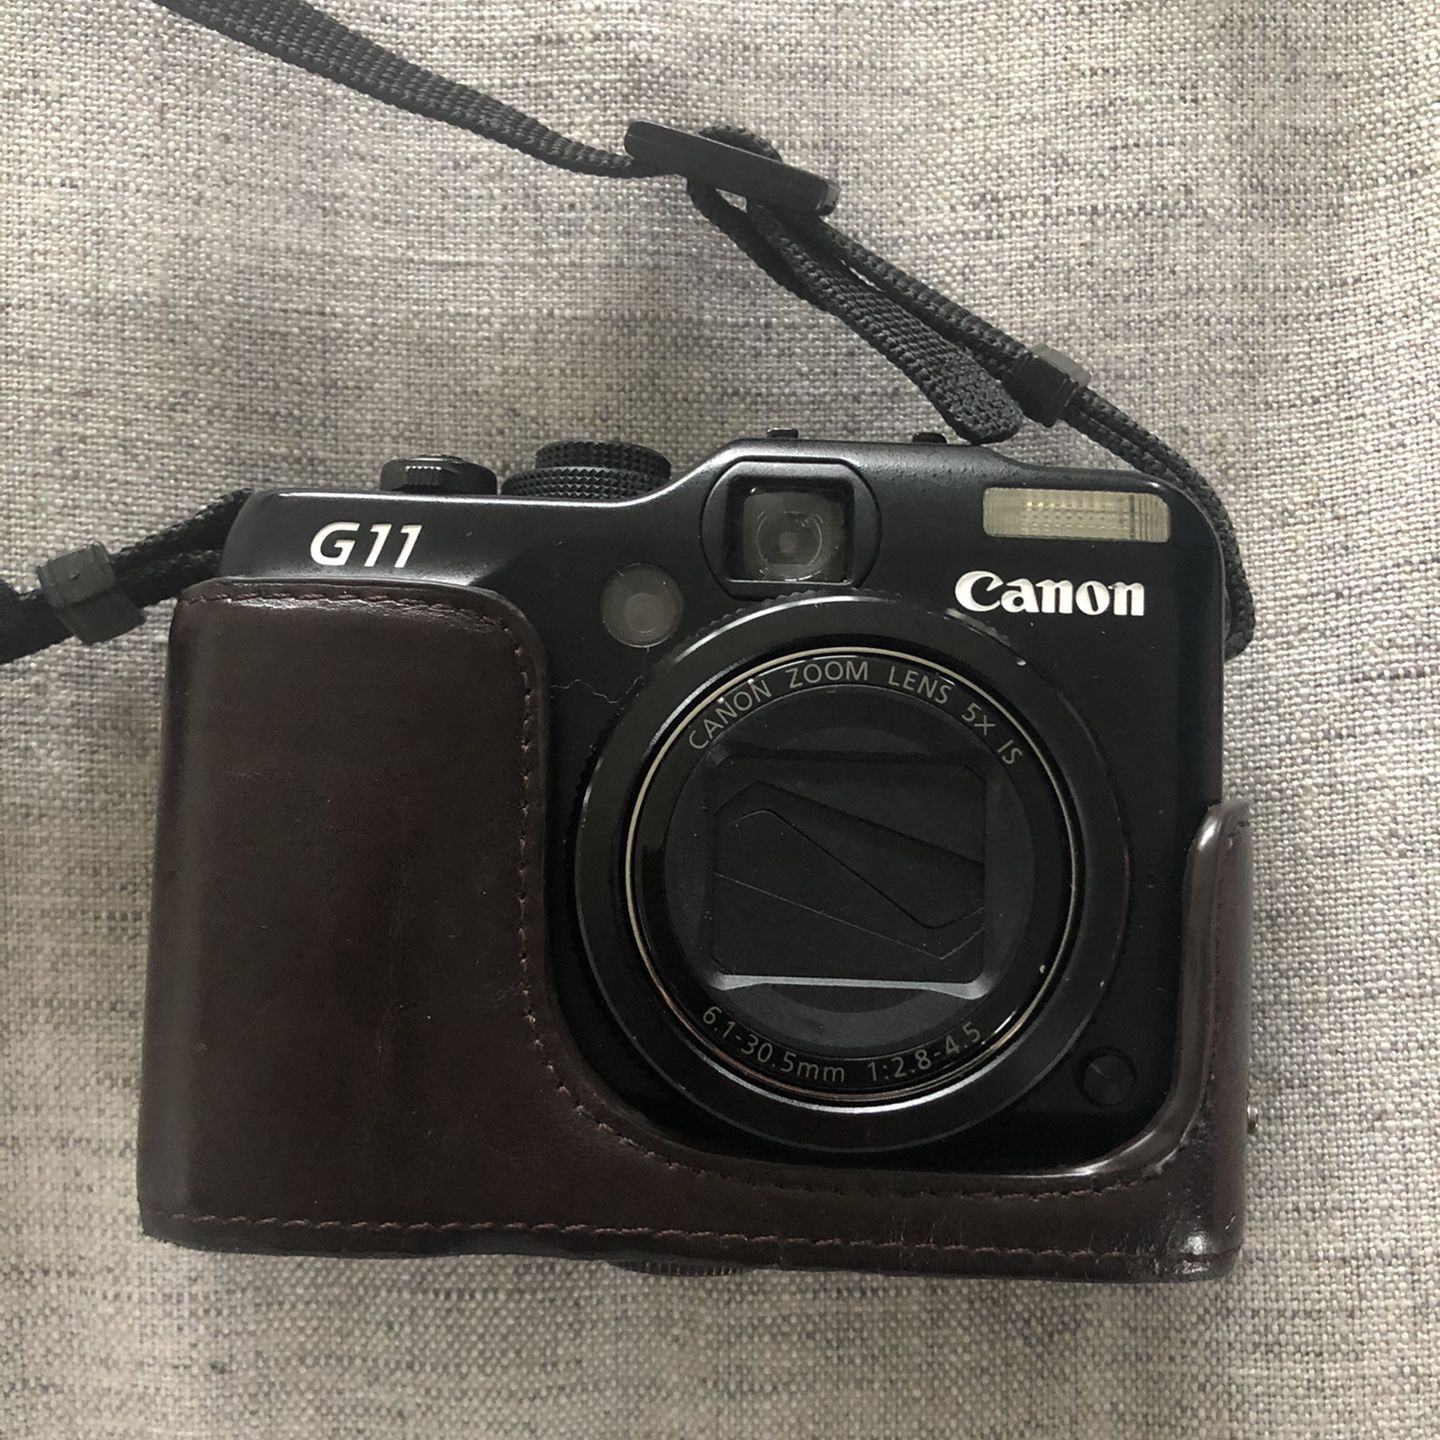 Canon G11 Camera